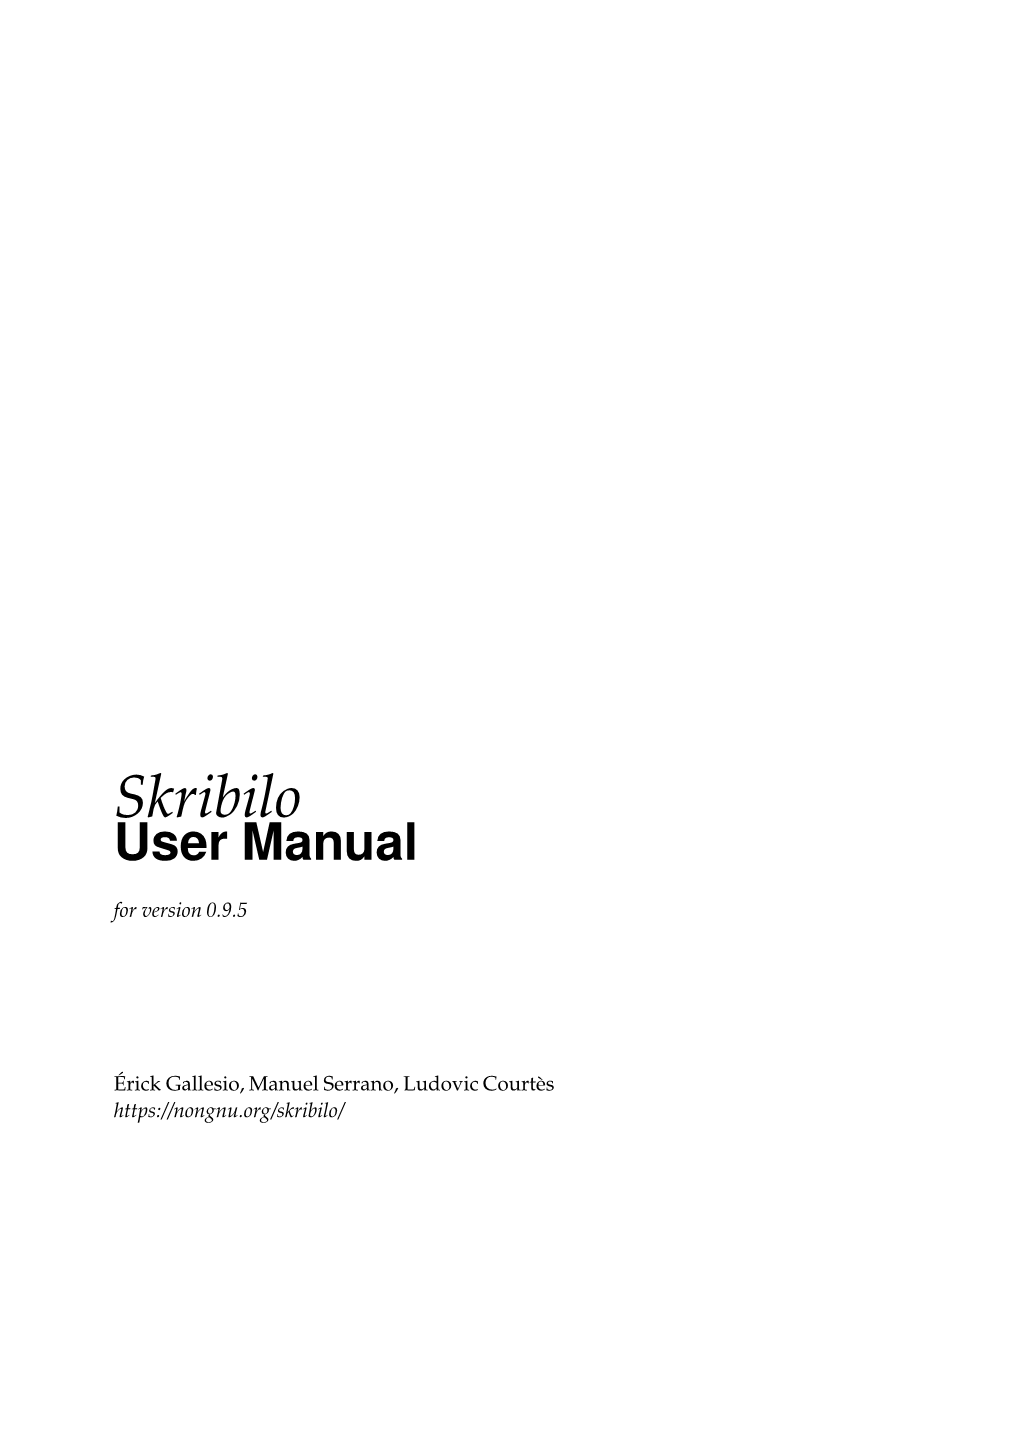 Skribilo User Manual for Version 0.9.5